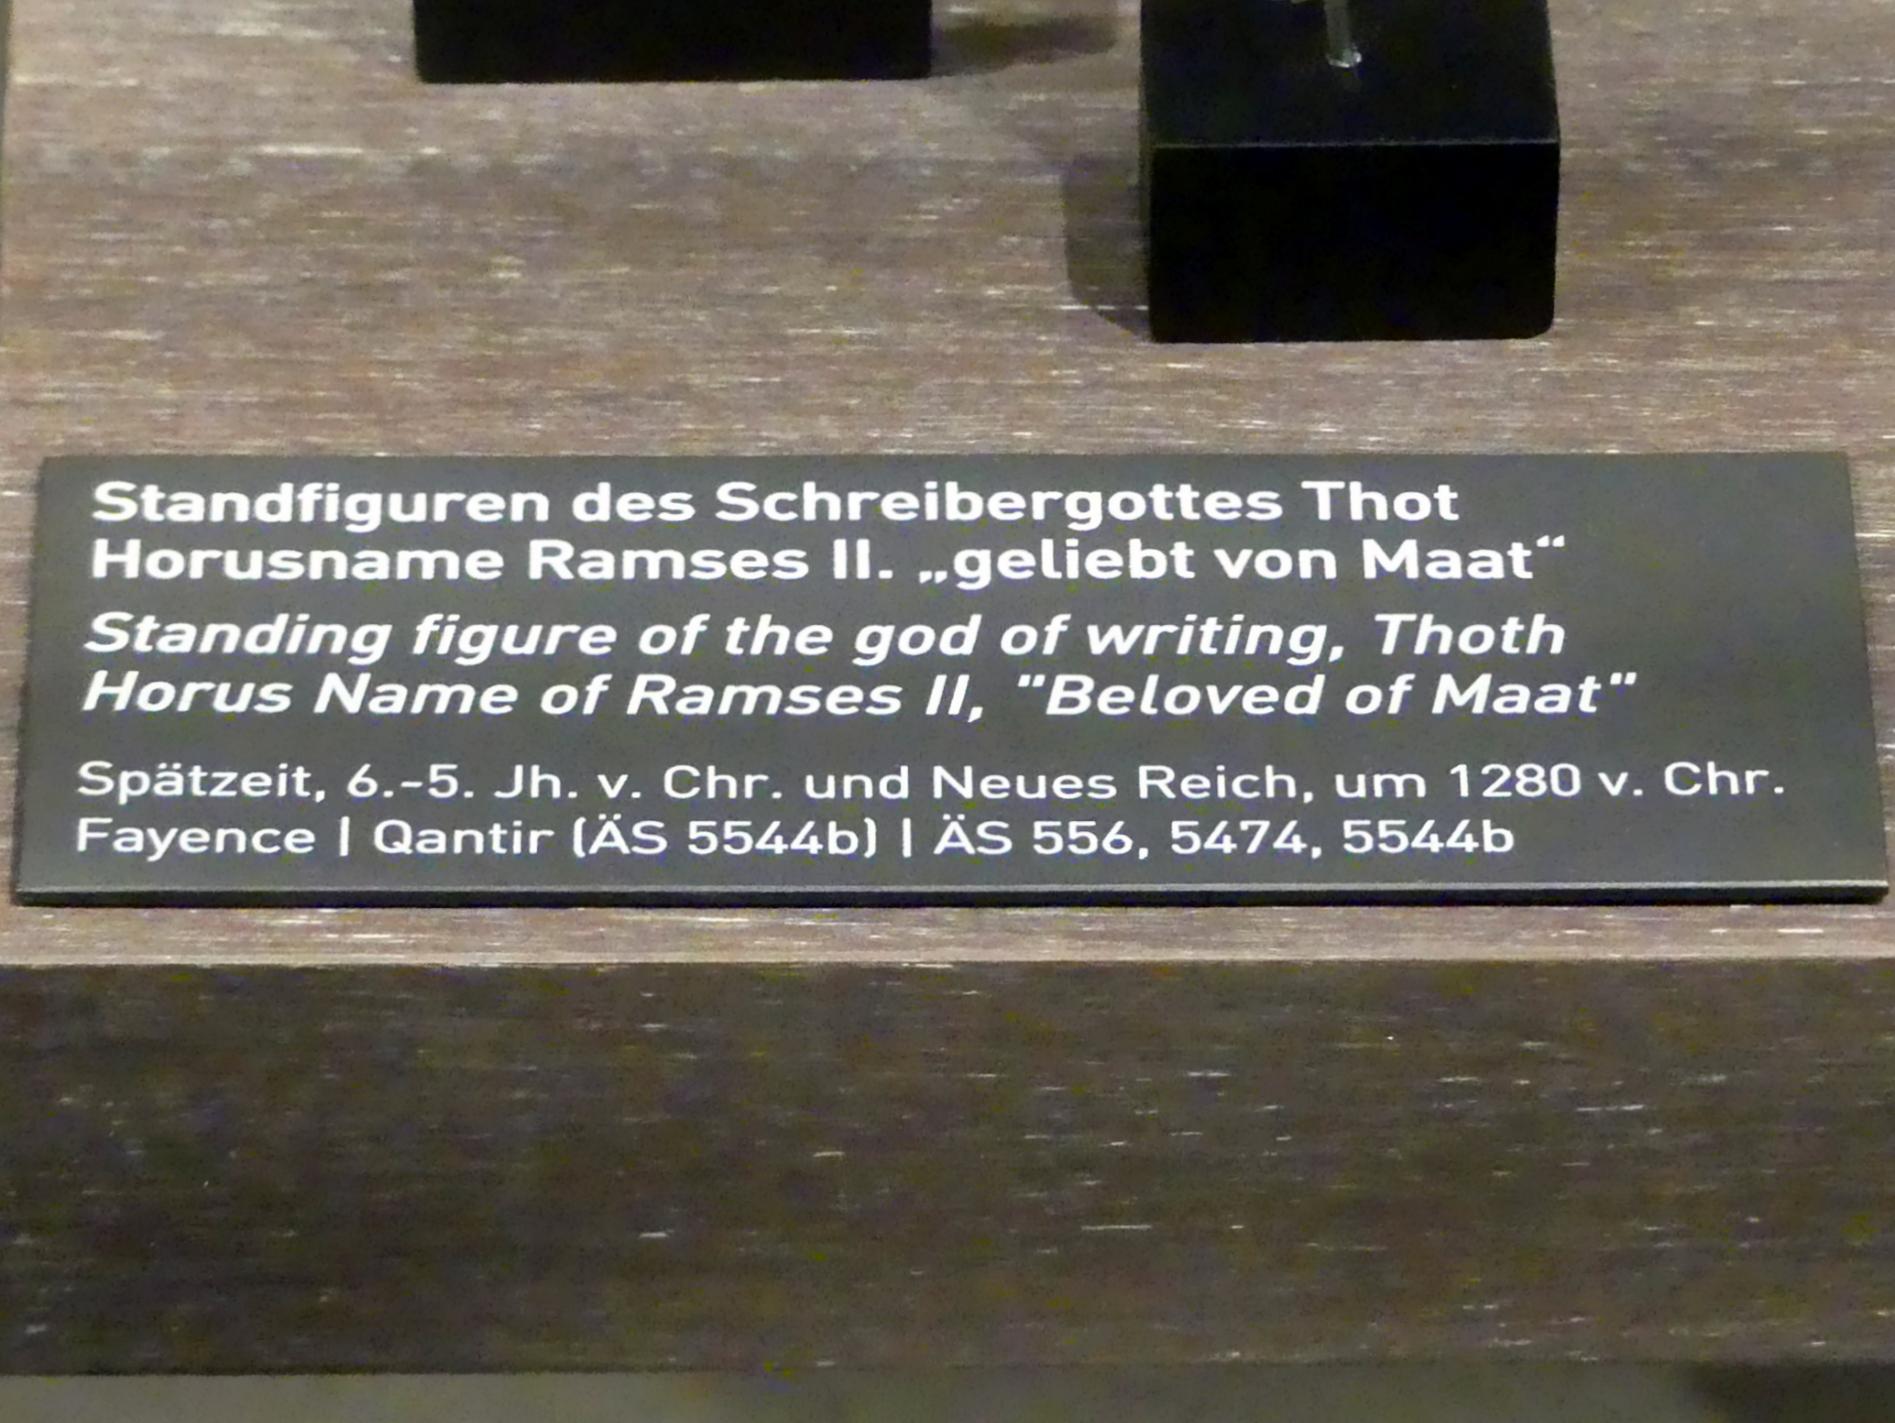 Standfiguren des Schreibergottes Thot, Spätzeit, 360 - 342 v. Chr., 600 - 400 v. Chr., Bild 2/2